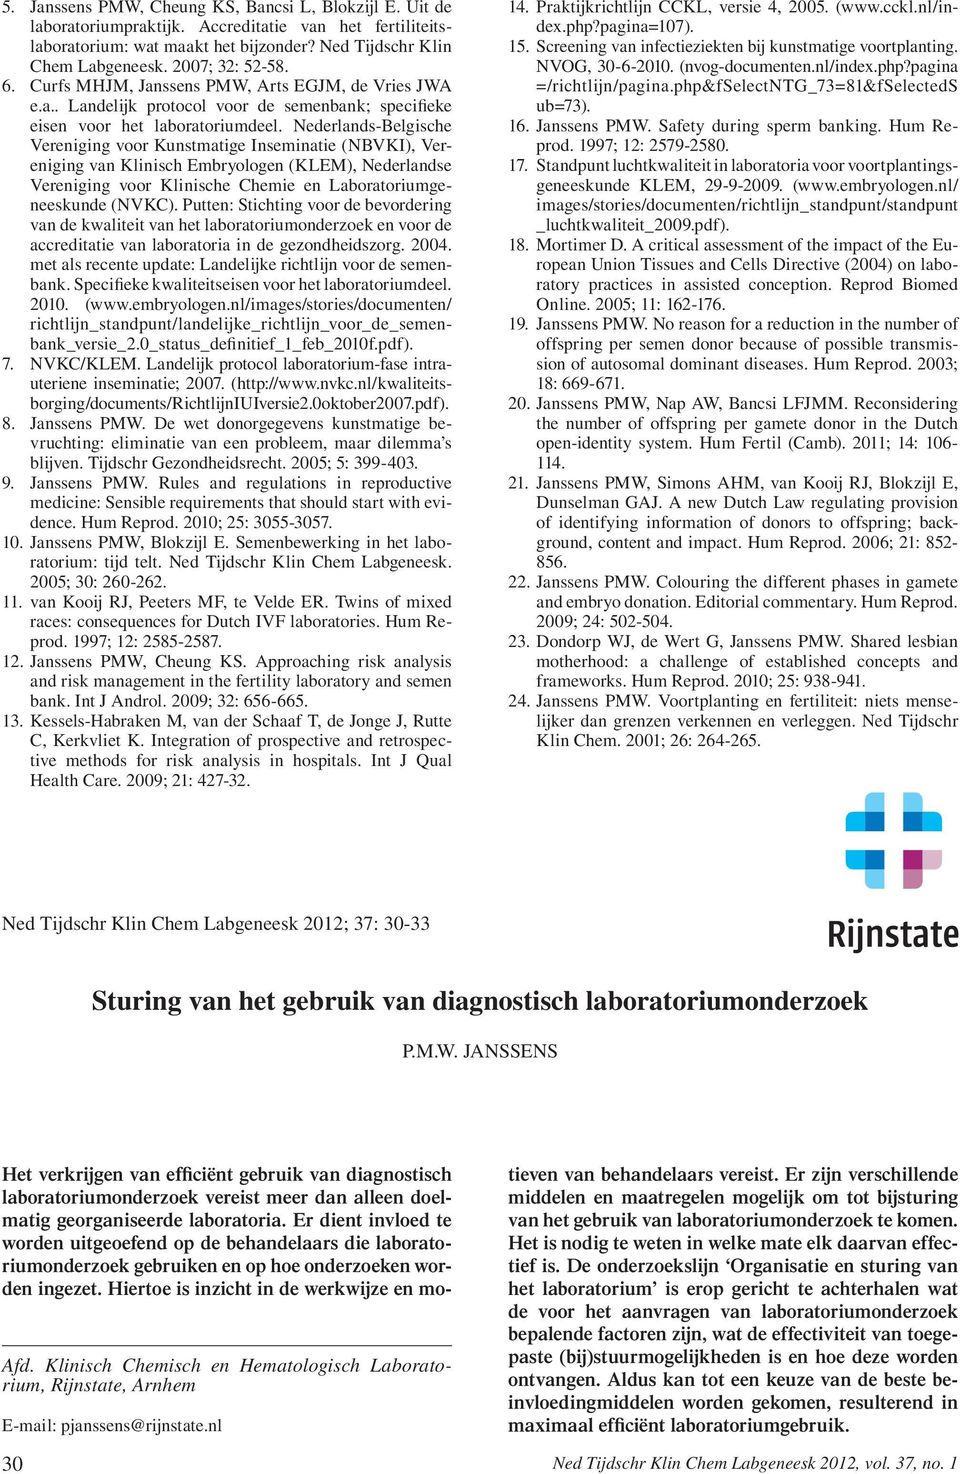 Nederlands-Belgische Vereniging voor Kunstmatige Inseminatie (NBVKI), Vereniging van Klinisch Embryologen (KLEM), Nederlandse Vereniging voor Klinische Chemie en Laboratoriumgeneeskunde (NVKC).